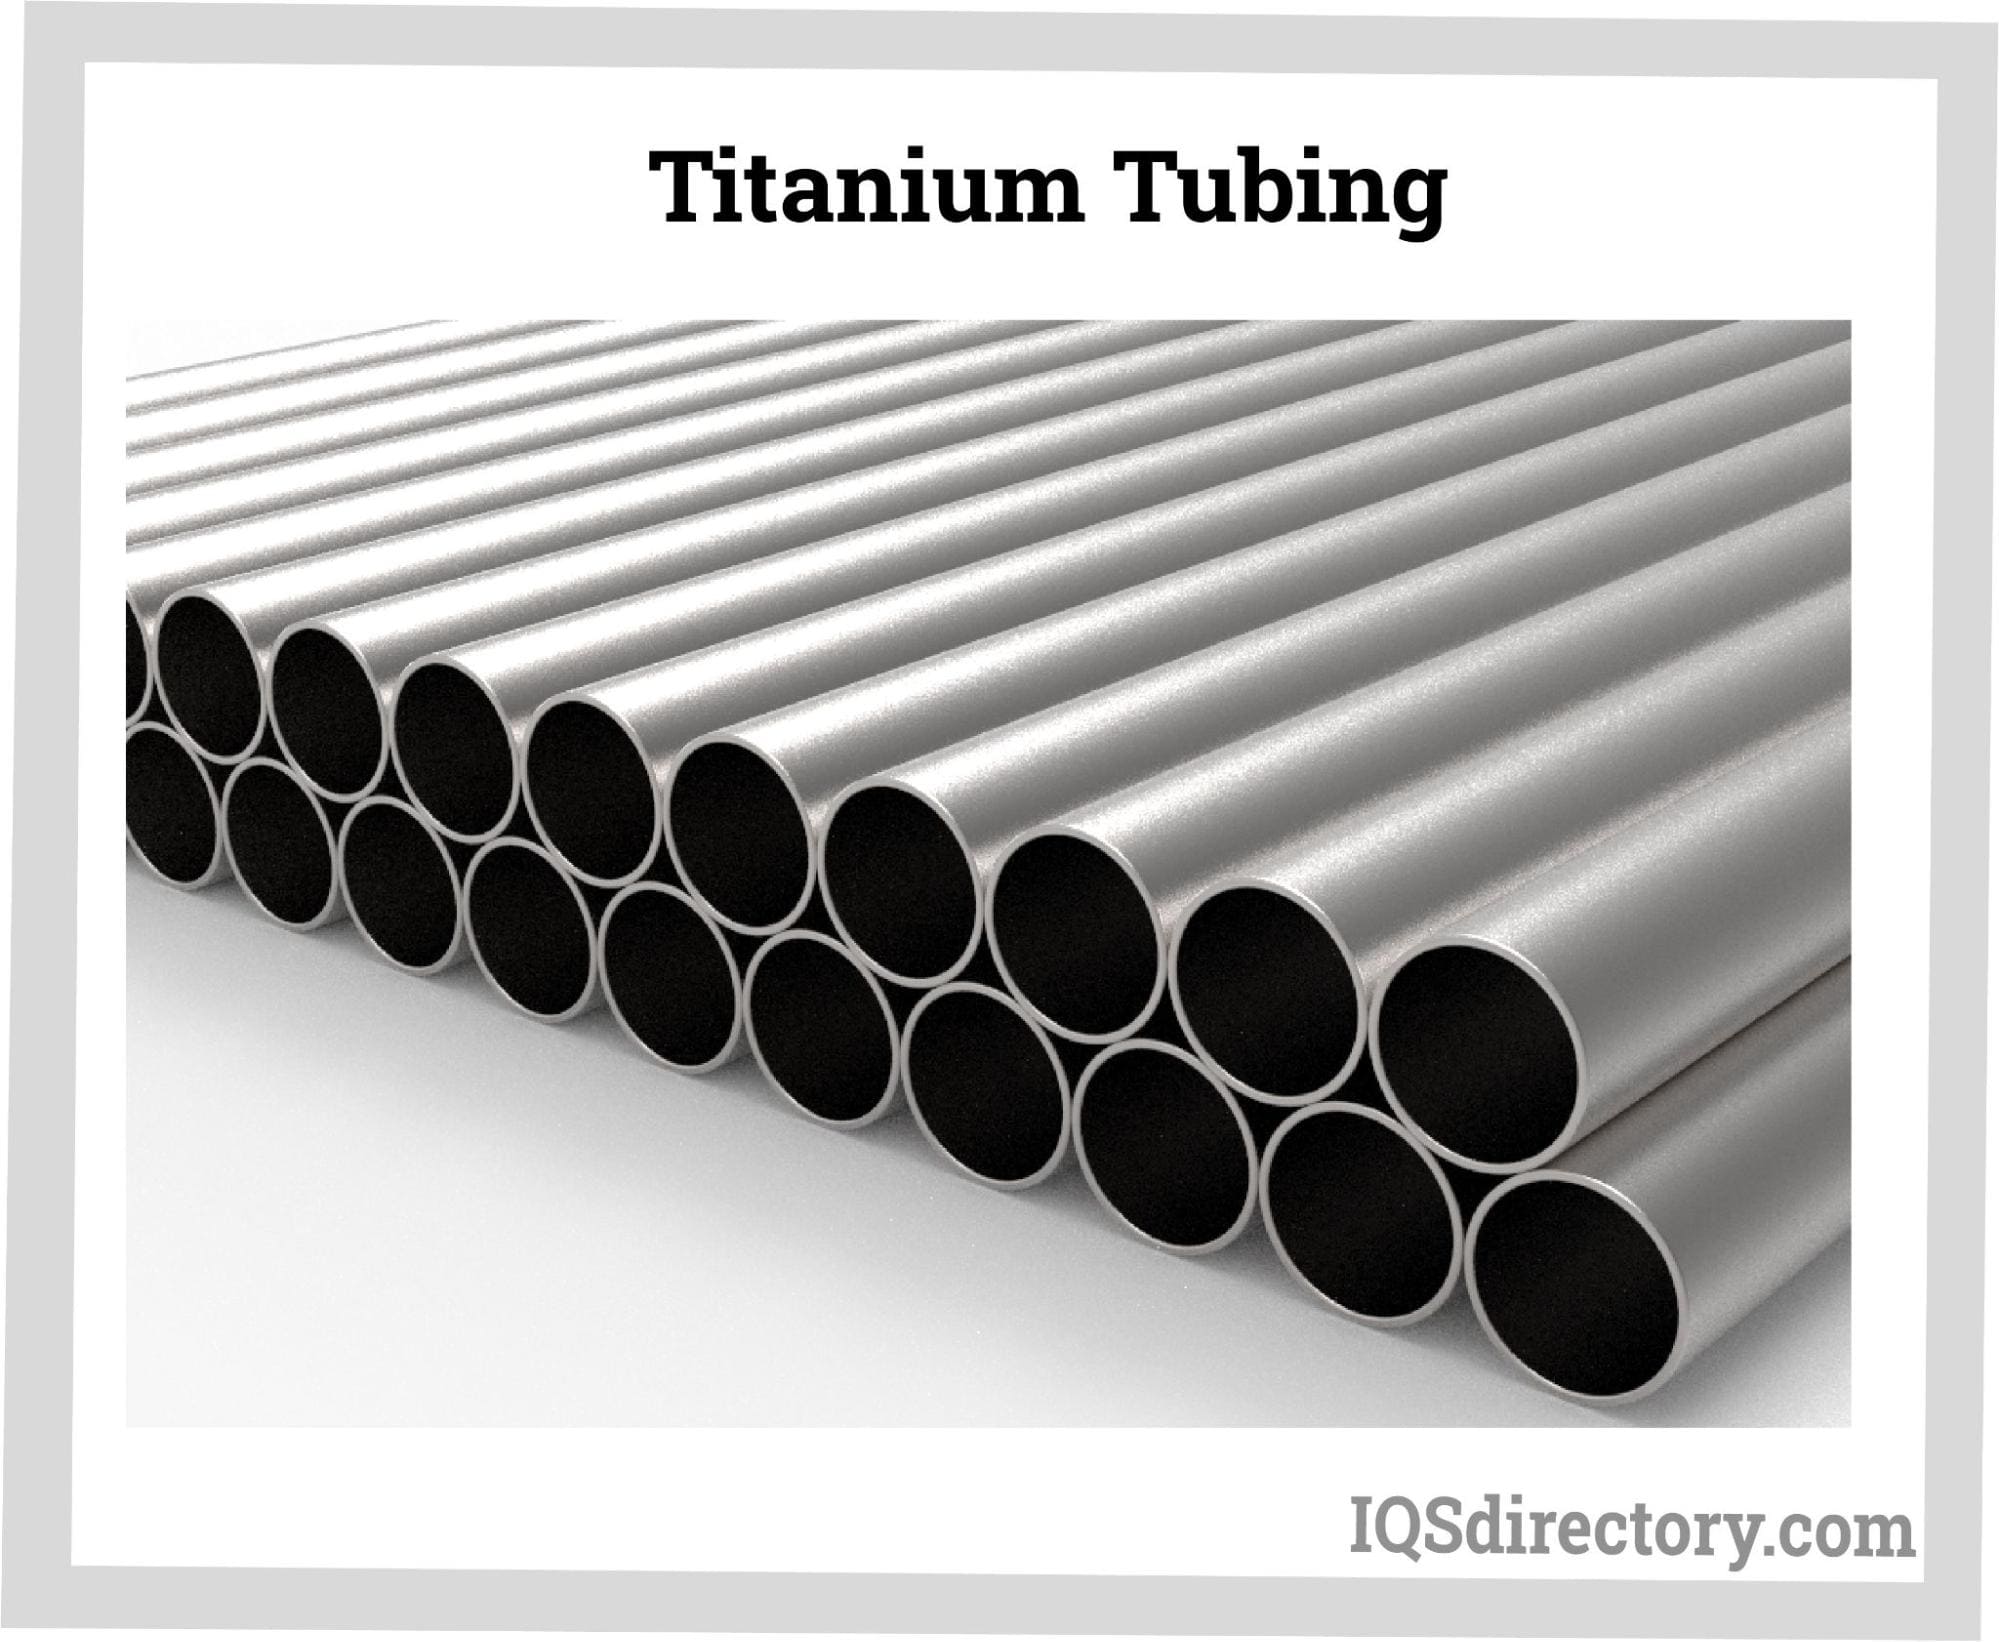 Titanium Tubing Manufacturers